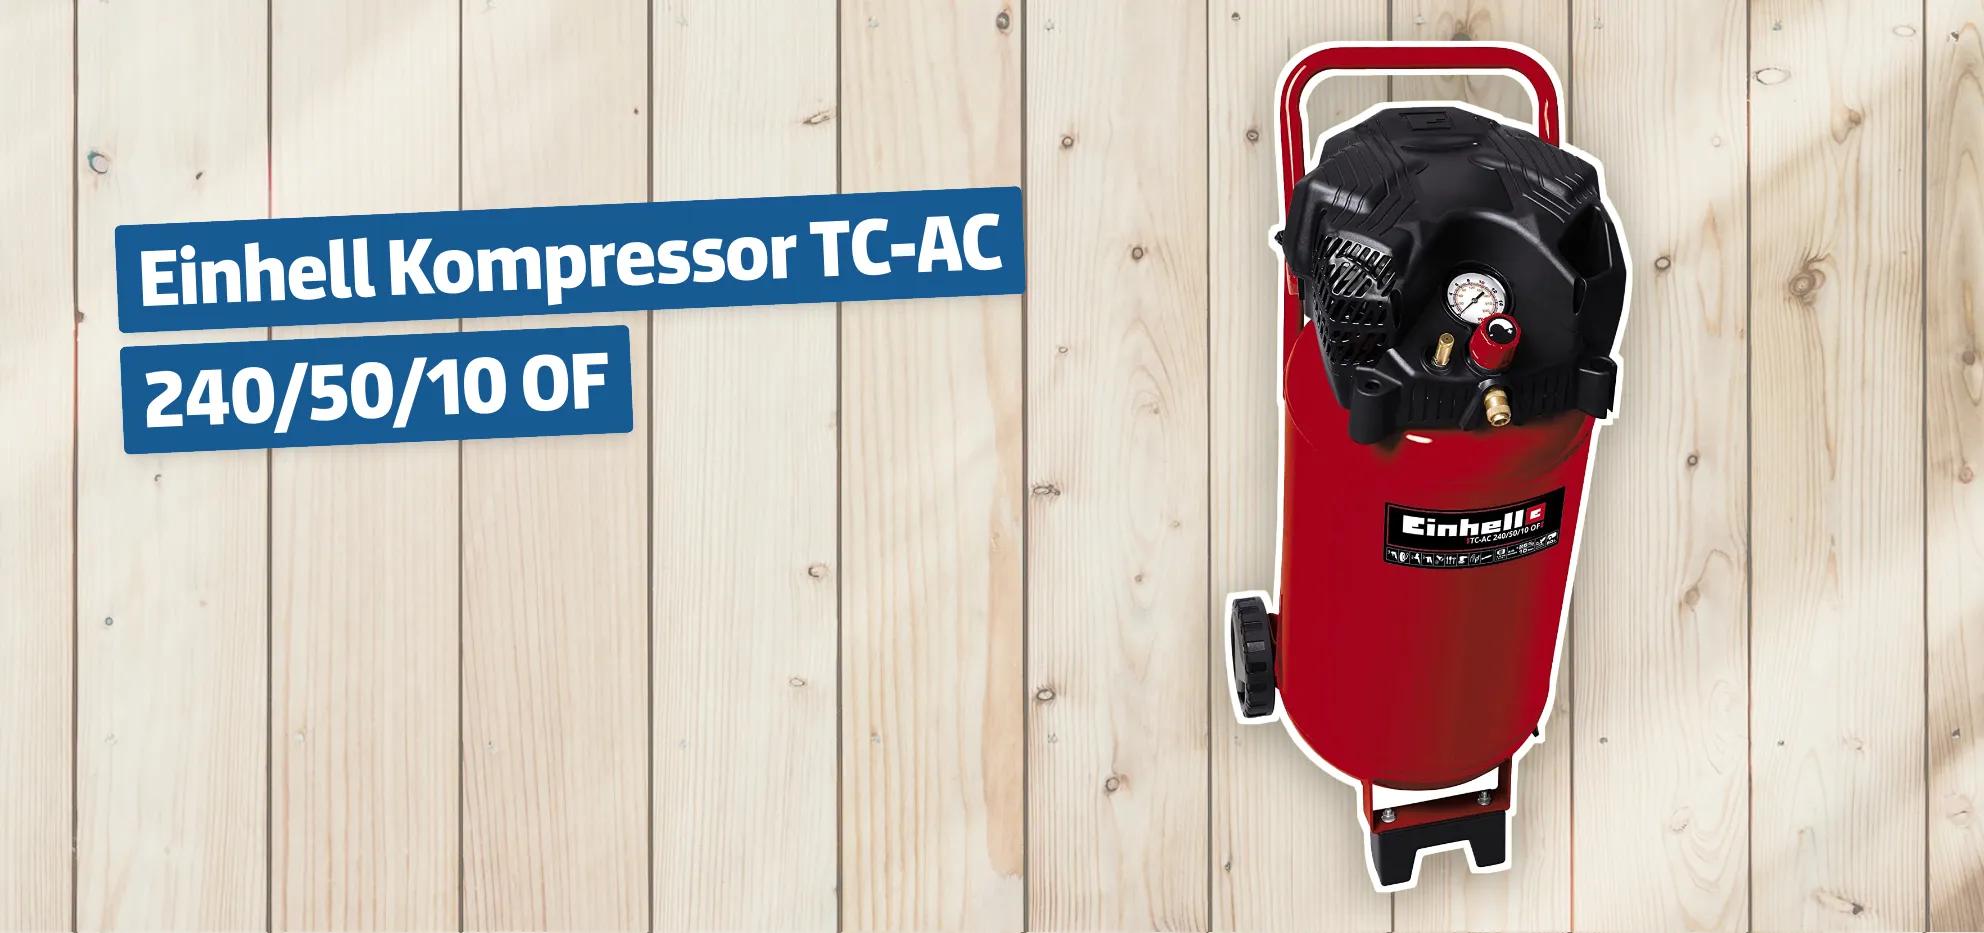 Einhell Kompressor TC-AC 240/50/10 OF